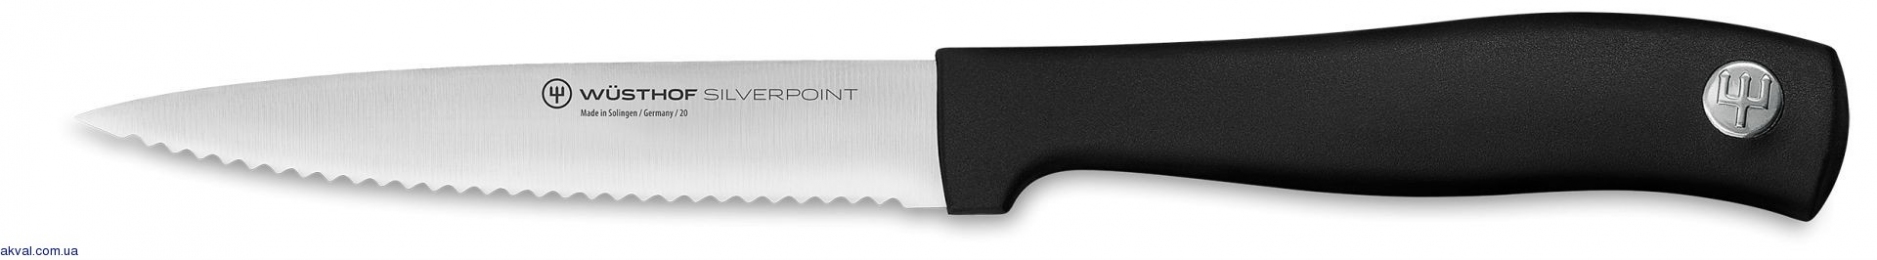 Нож для чистки овощей Wuesthof Silverpoint, 10 см (1025149710)